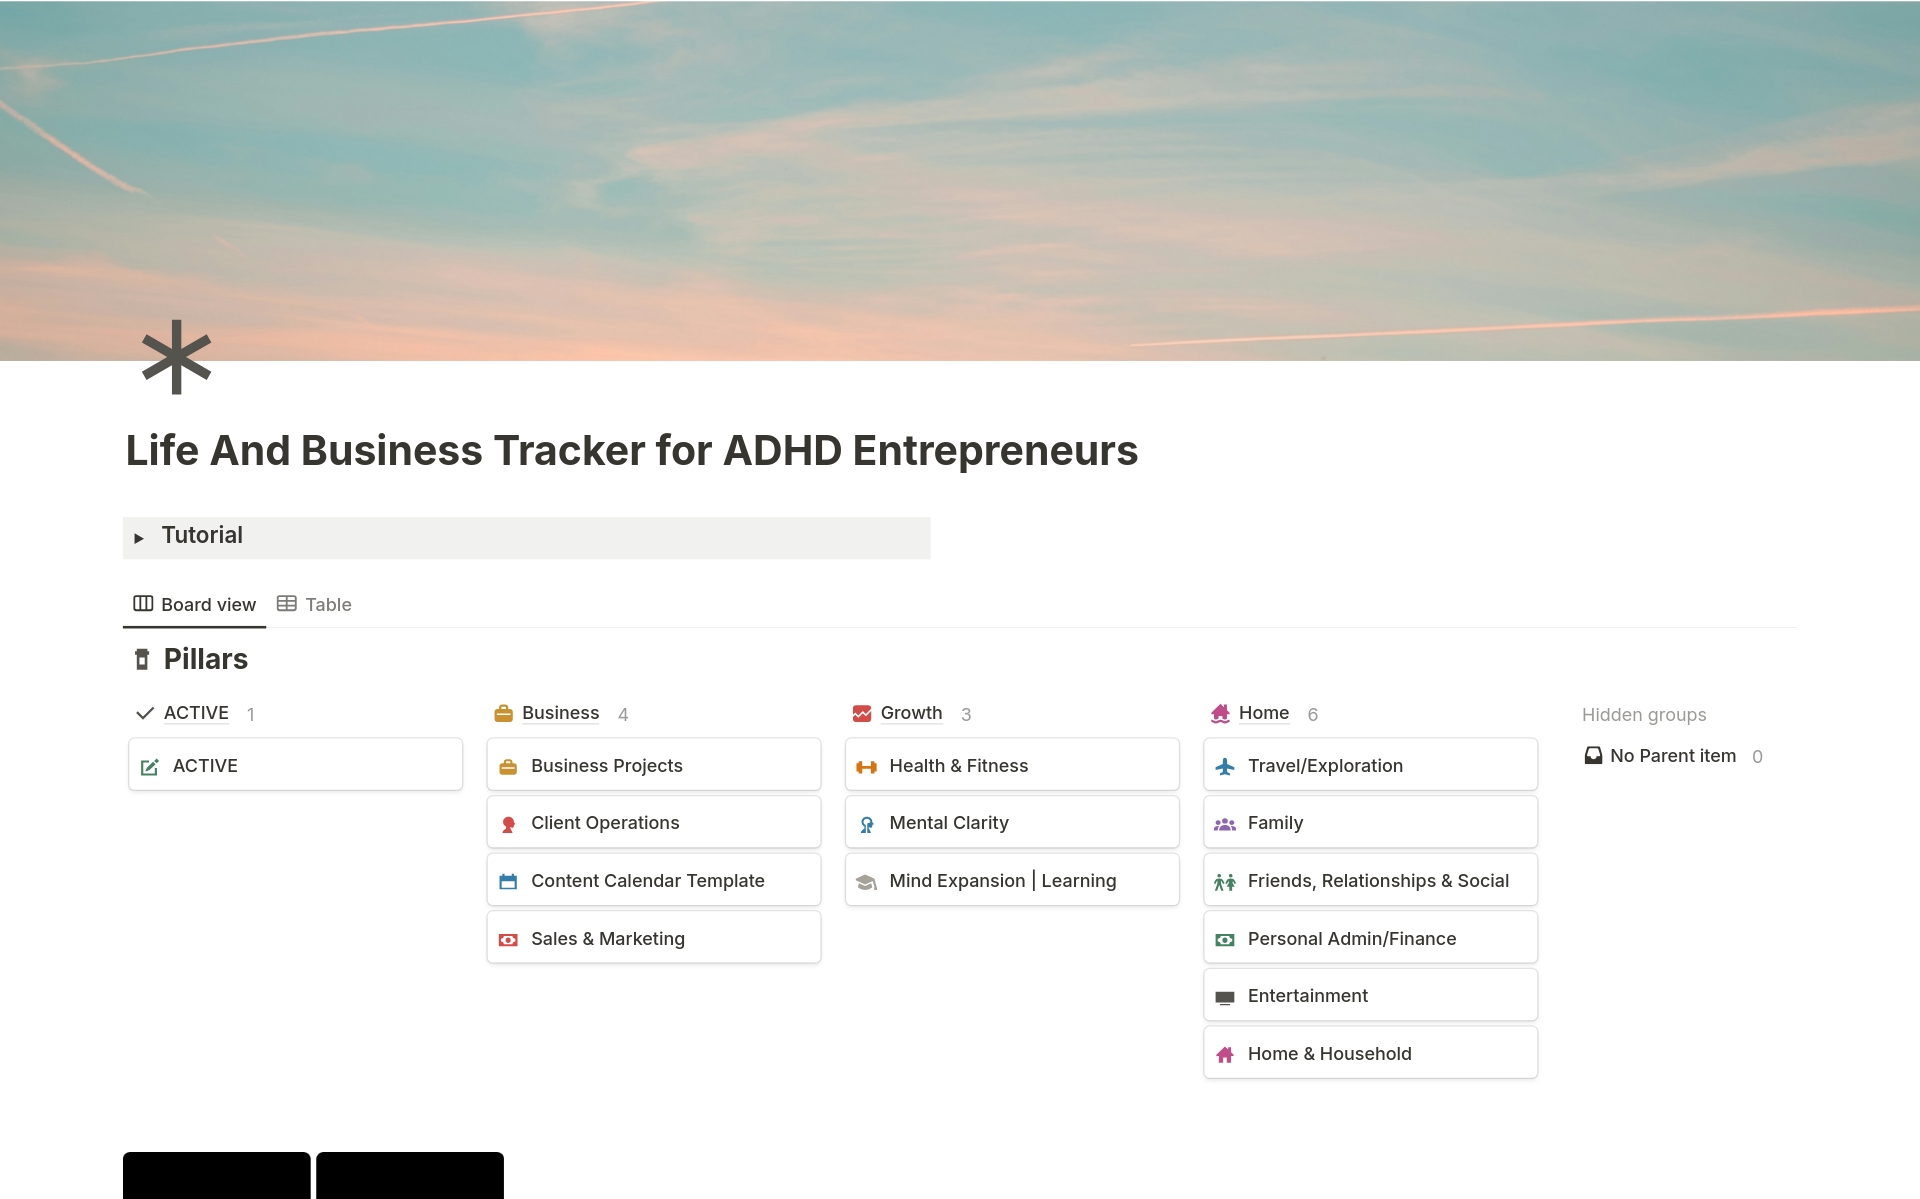 Aperçu du modèle de Life & Business Tracker for ADHD Entrepreneurs